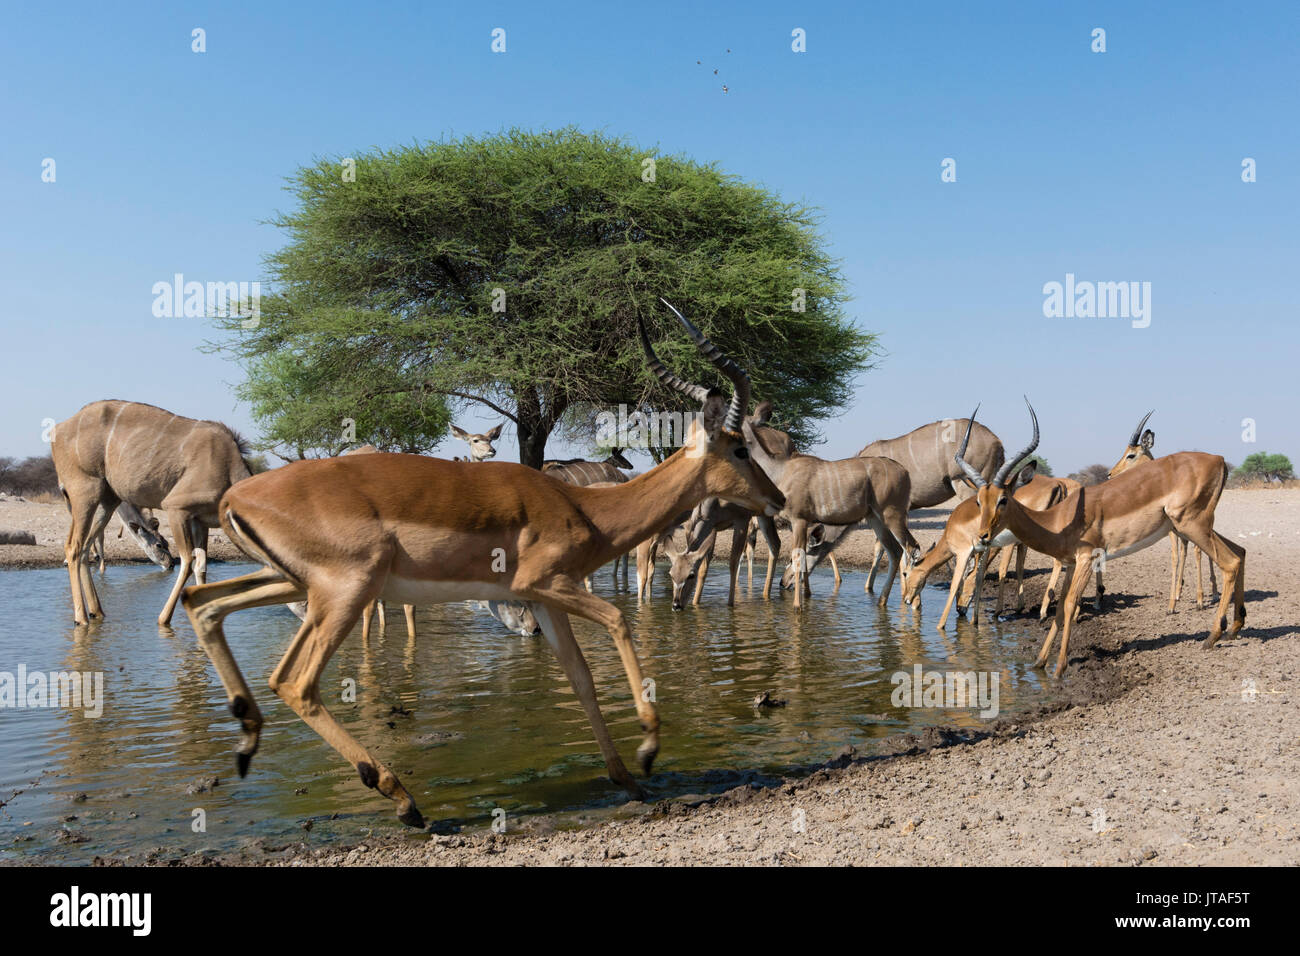 Remote camera image of greater kudus (Tragelaphus strepsiceros) and impalas (Aepyceros melampus) at waterhole, Botswana, Africa Stock Photo